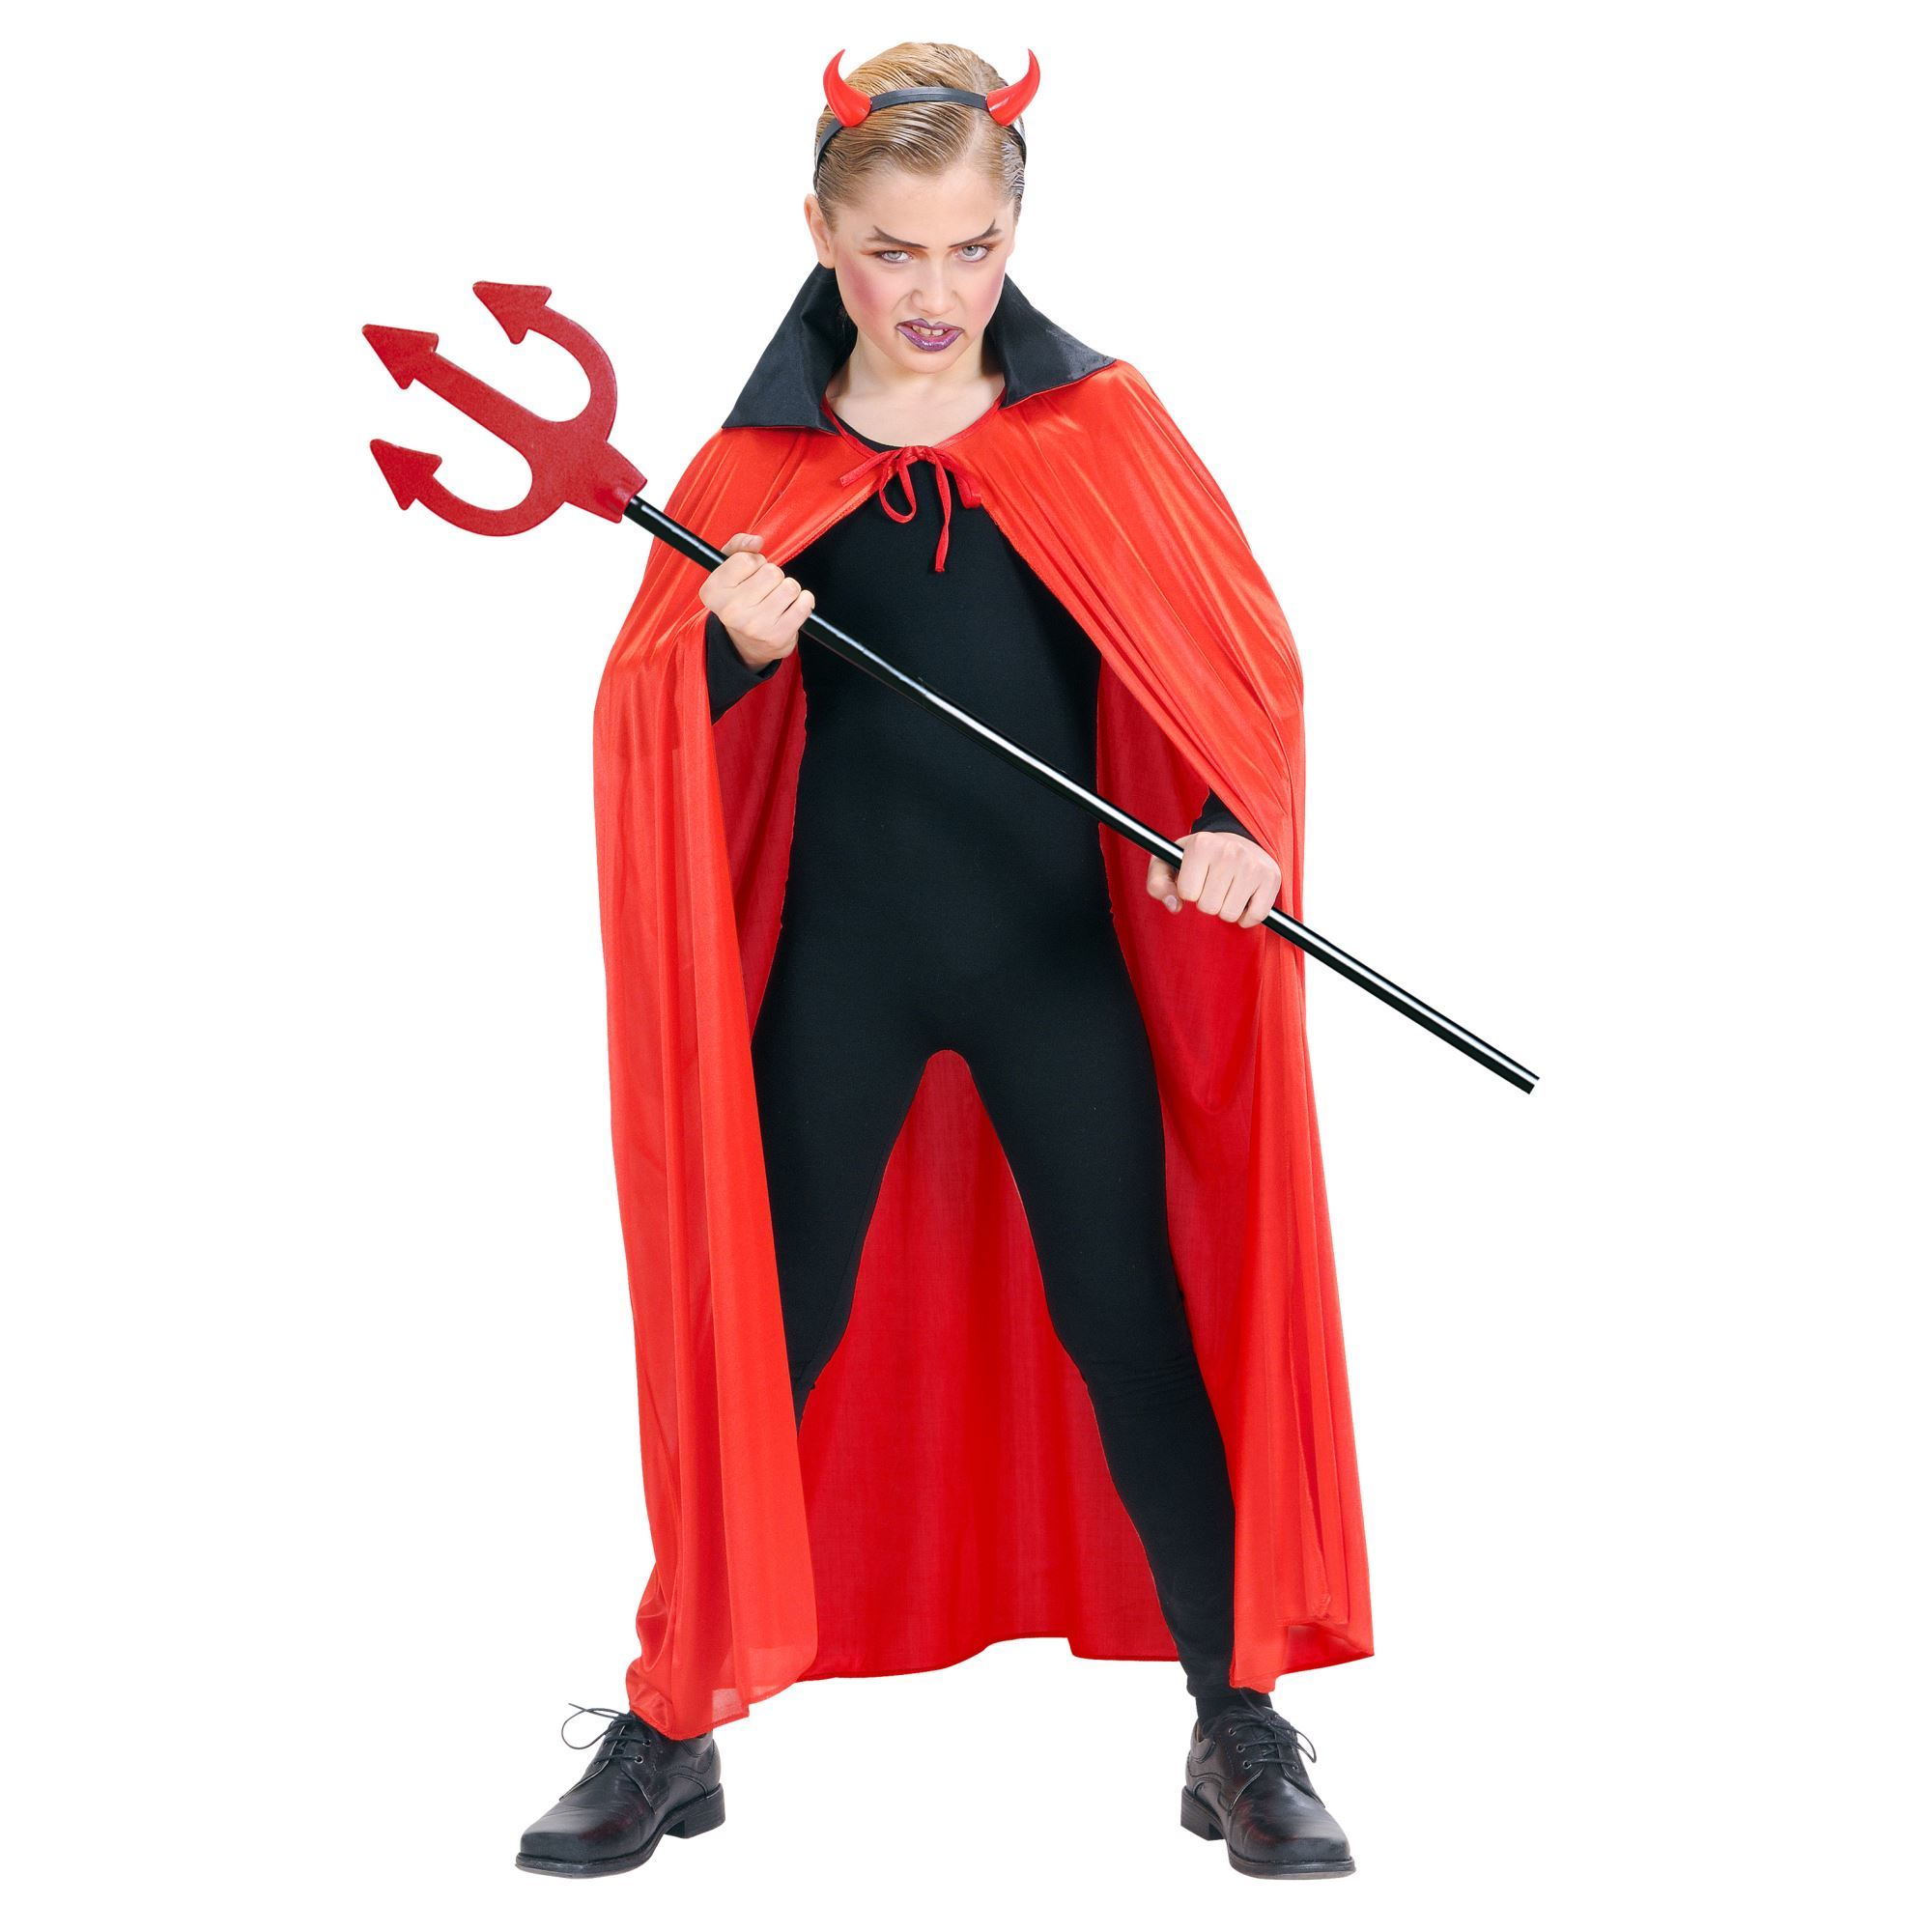 kinder cape rood met zwarte kraag 110cm satijn